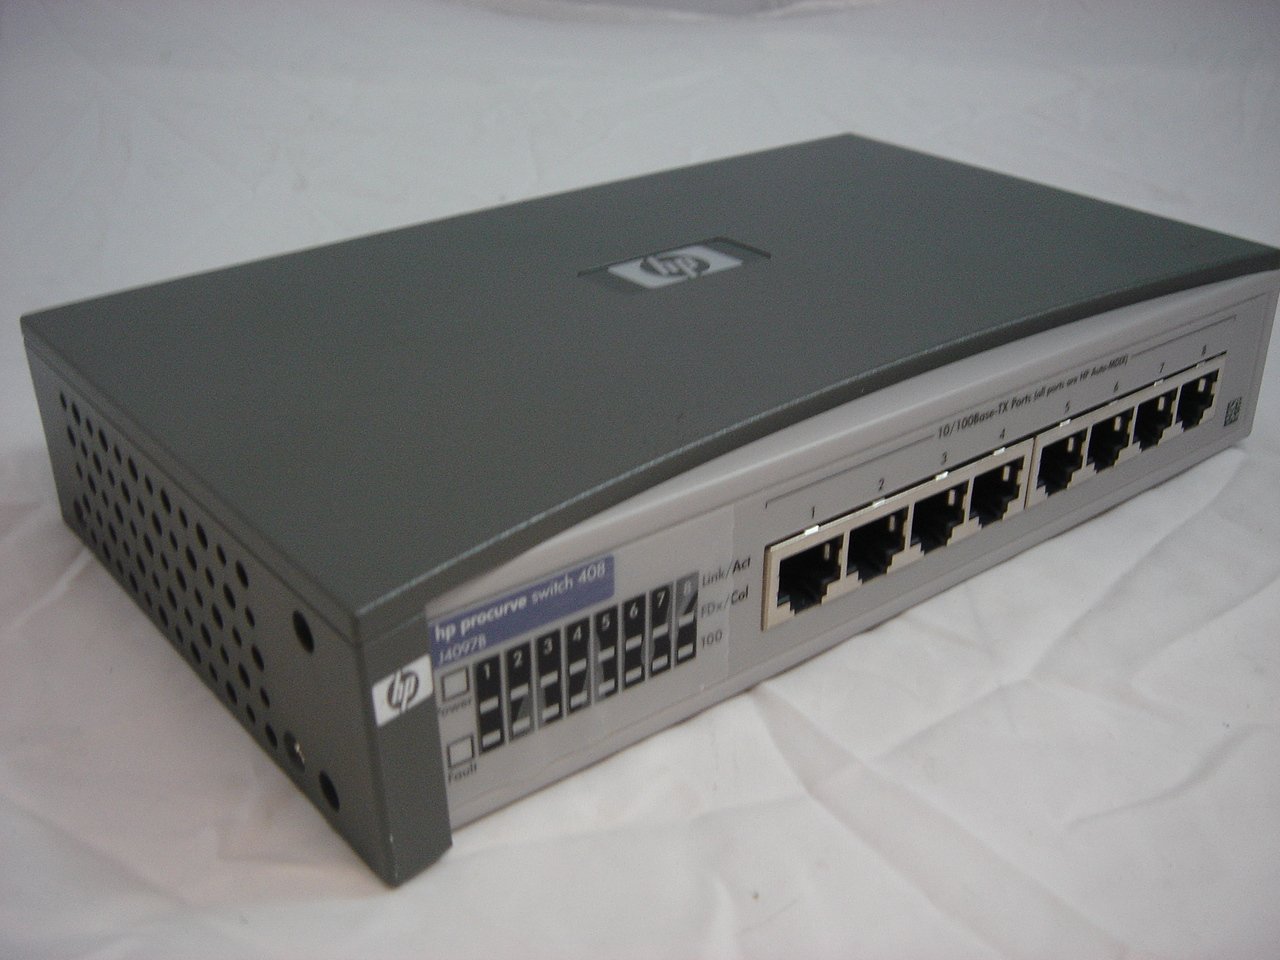 MC3894_J4097B_HP ProCurve 408 8 Port 10BASE-T Switch - Image2